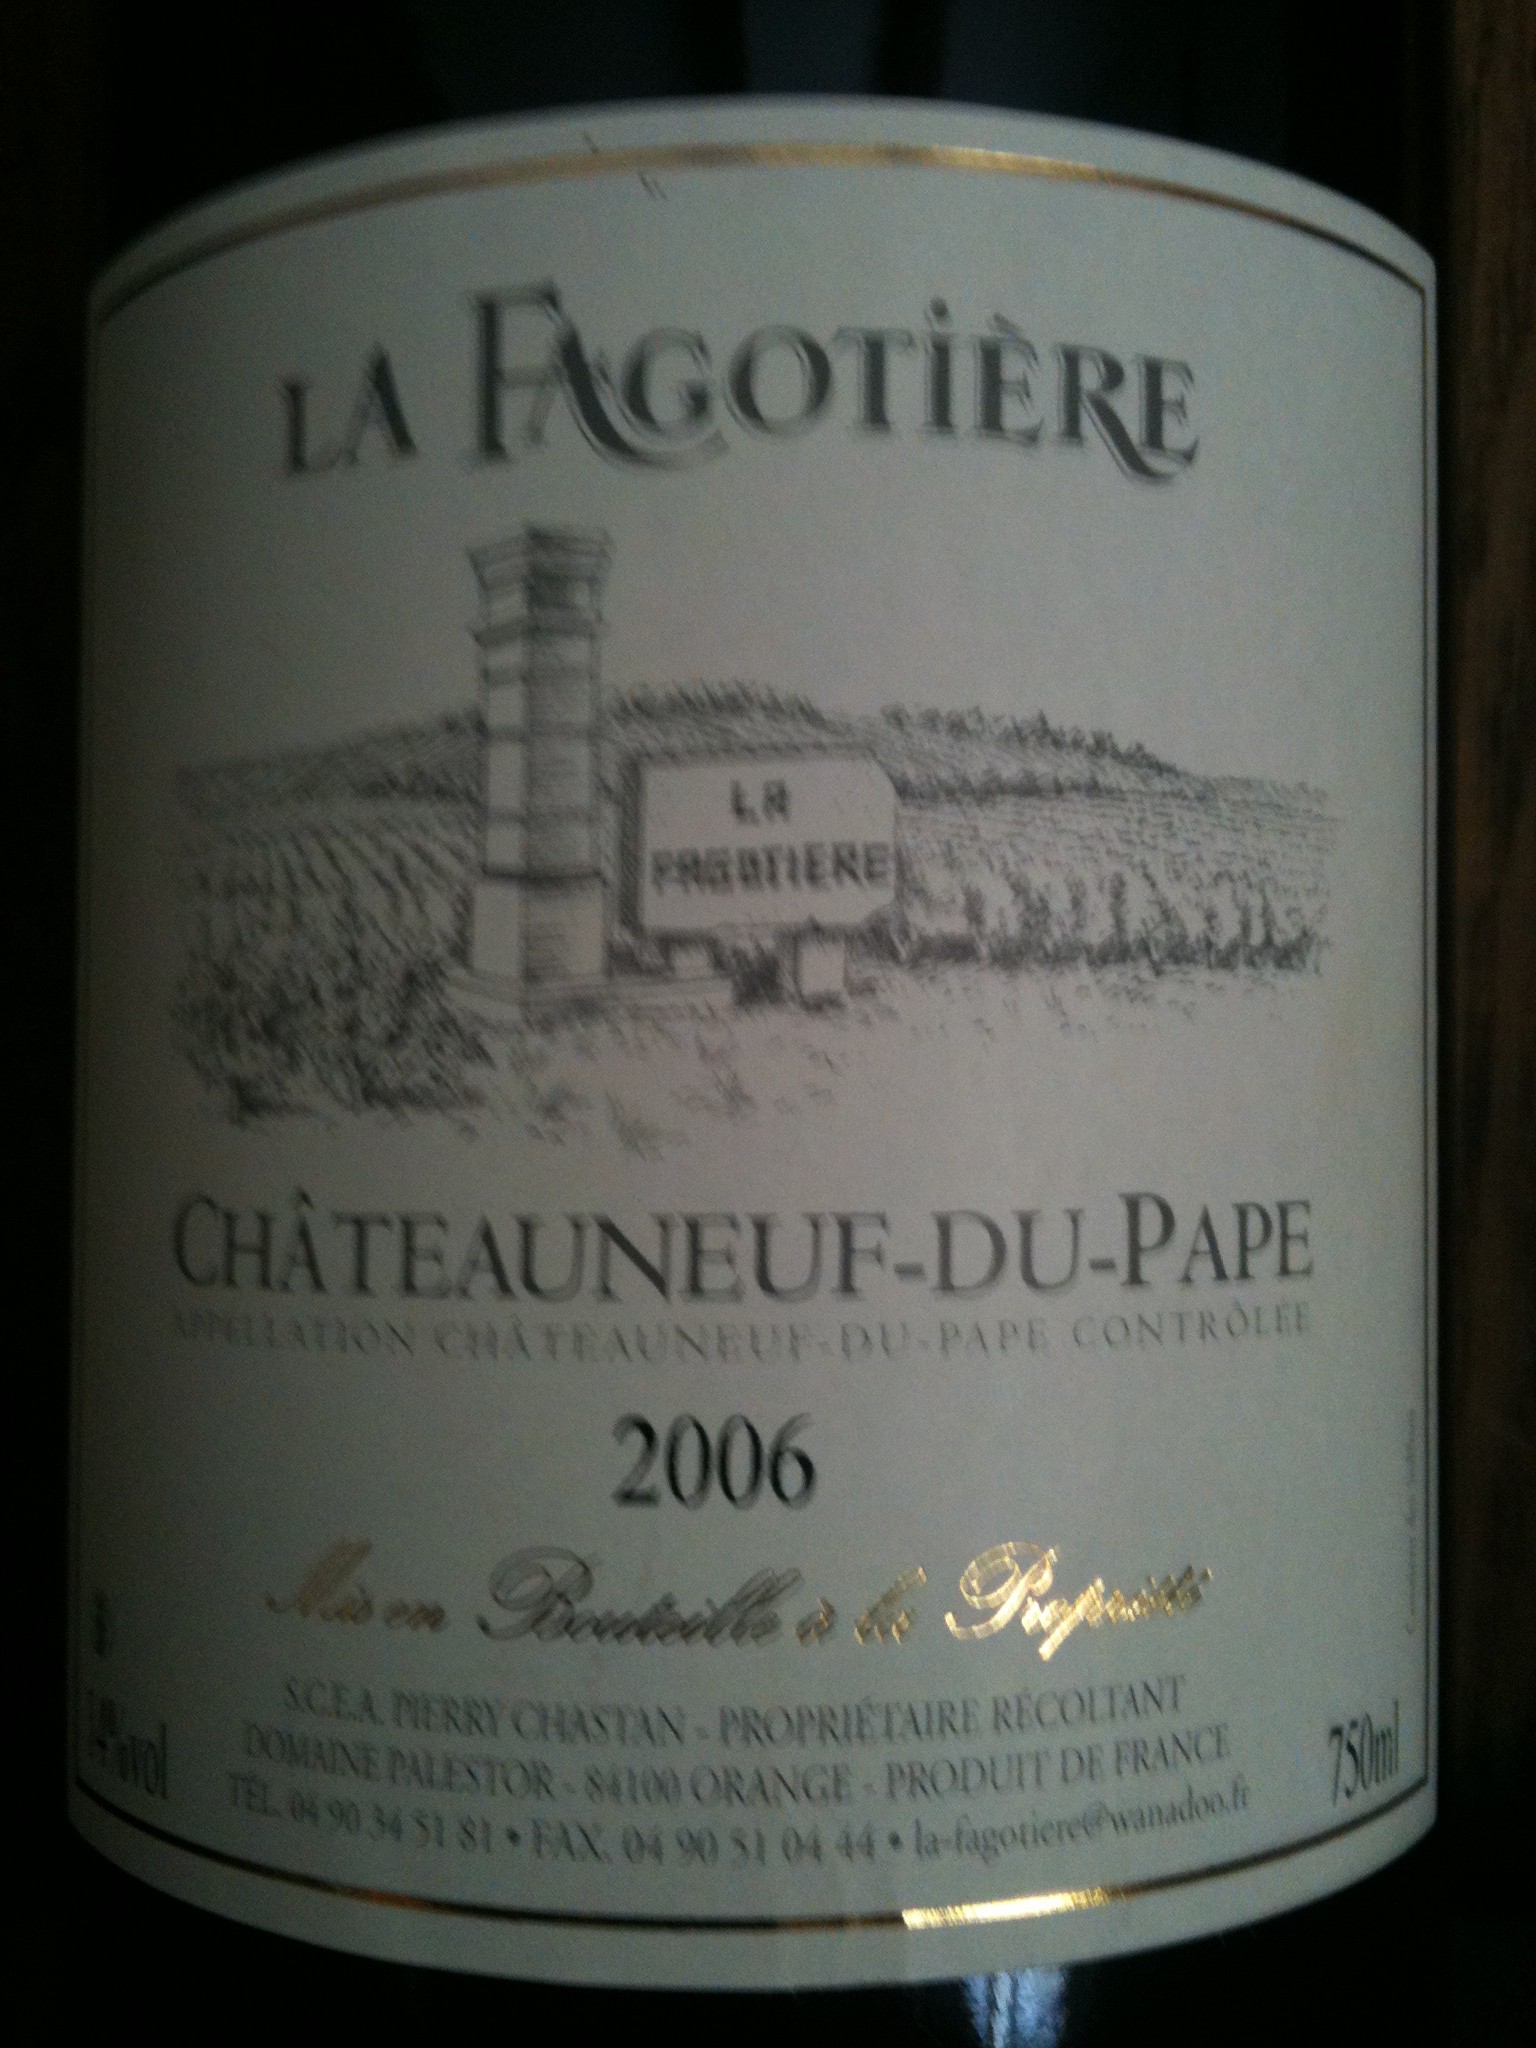 La Fagotière, Châteauneuf-du-Pape, 2006 (new label)